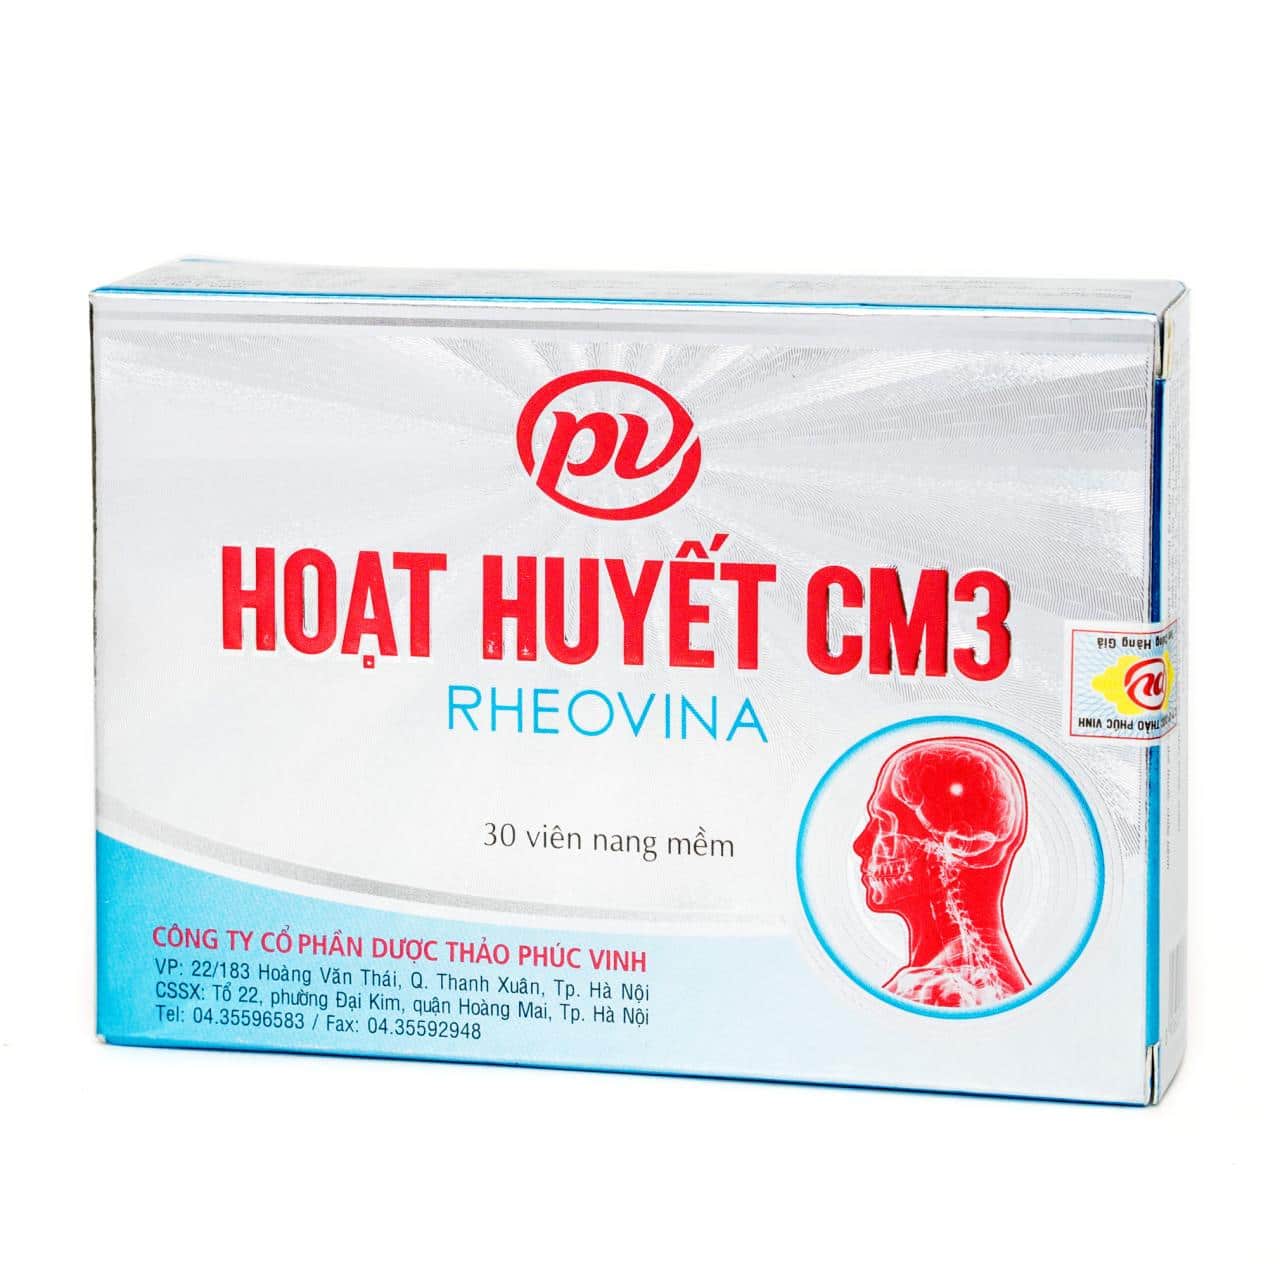 Hoạt huyết CM3 - Sản phẩm Việt nổi tiếng